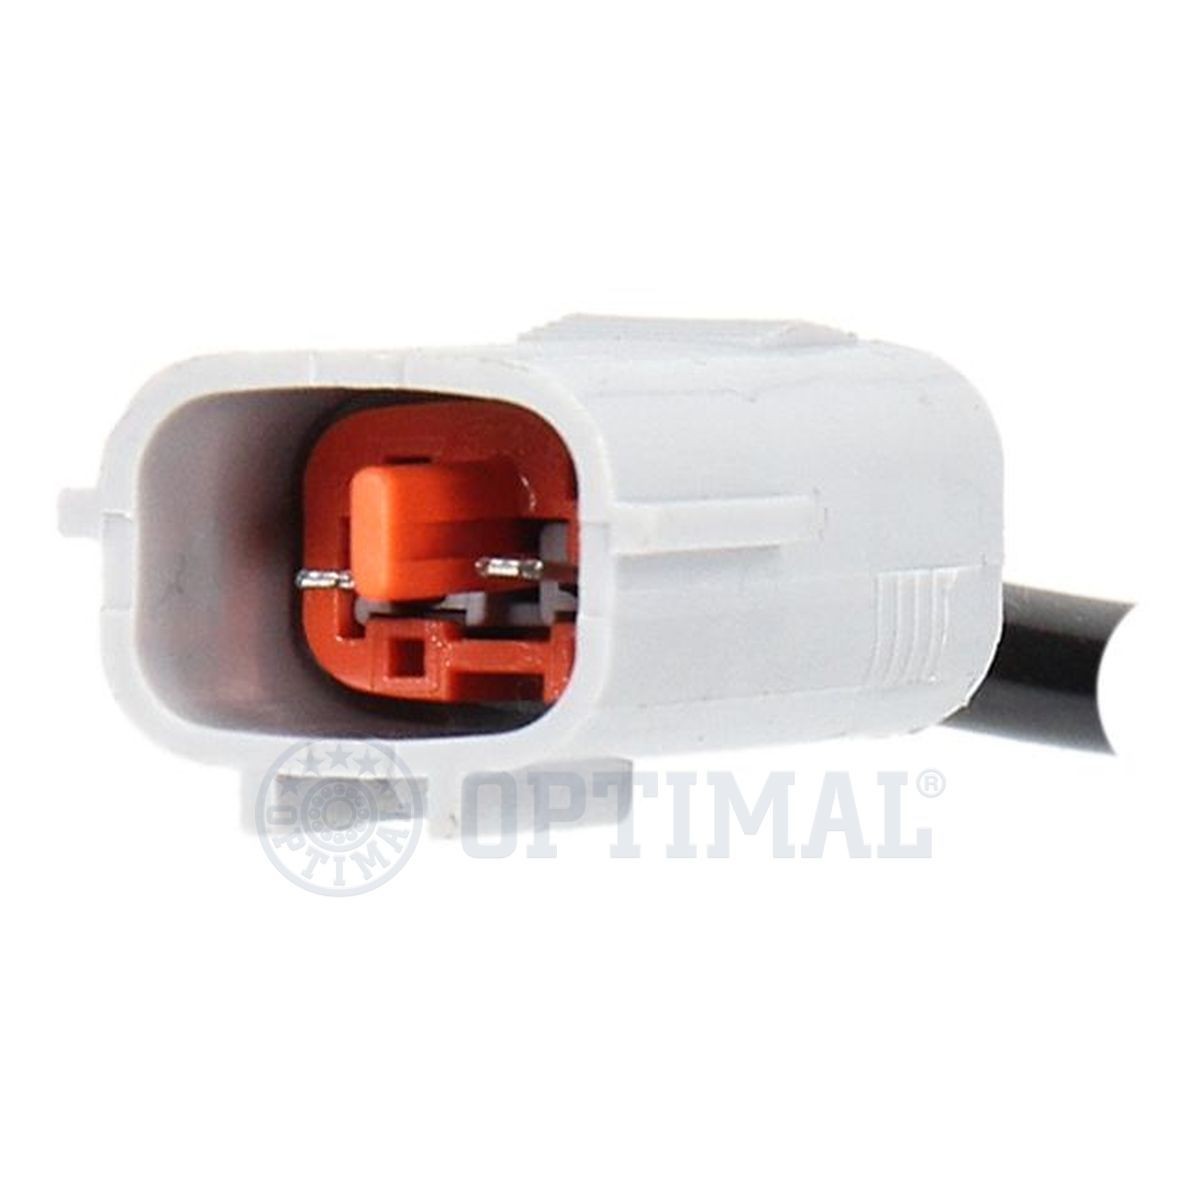 06S472 Anti lock brake sensor OPTIMAL 06-S472 review and test